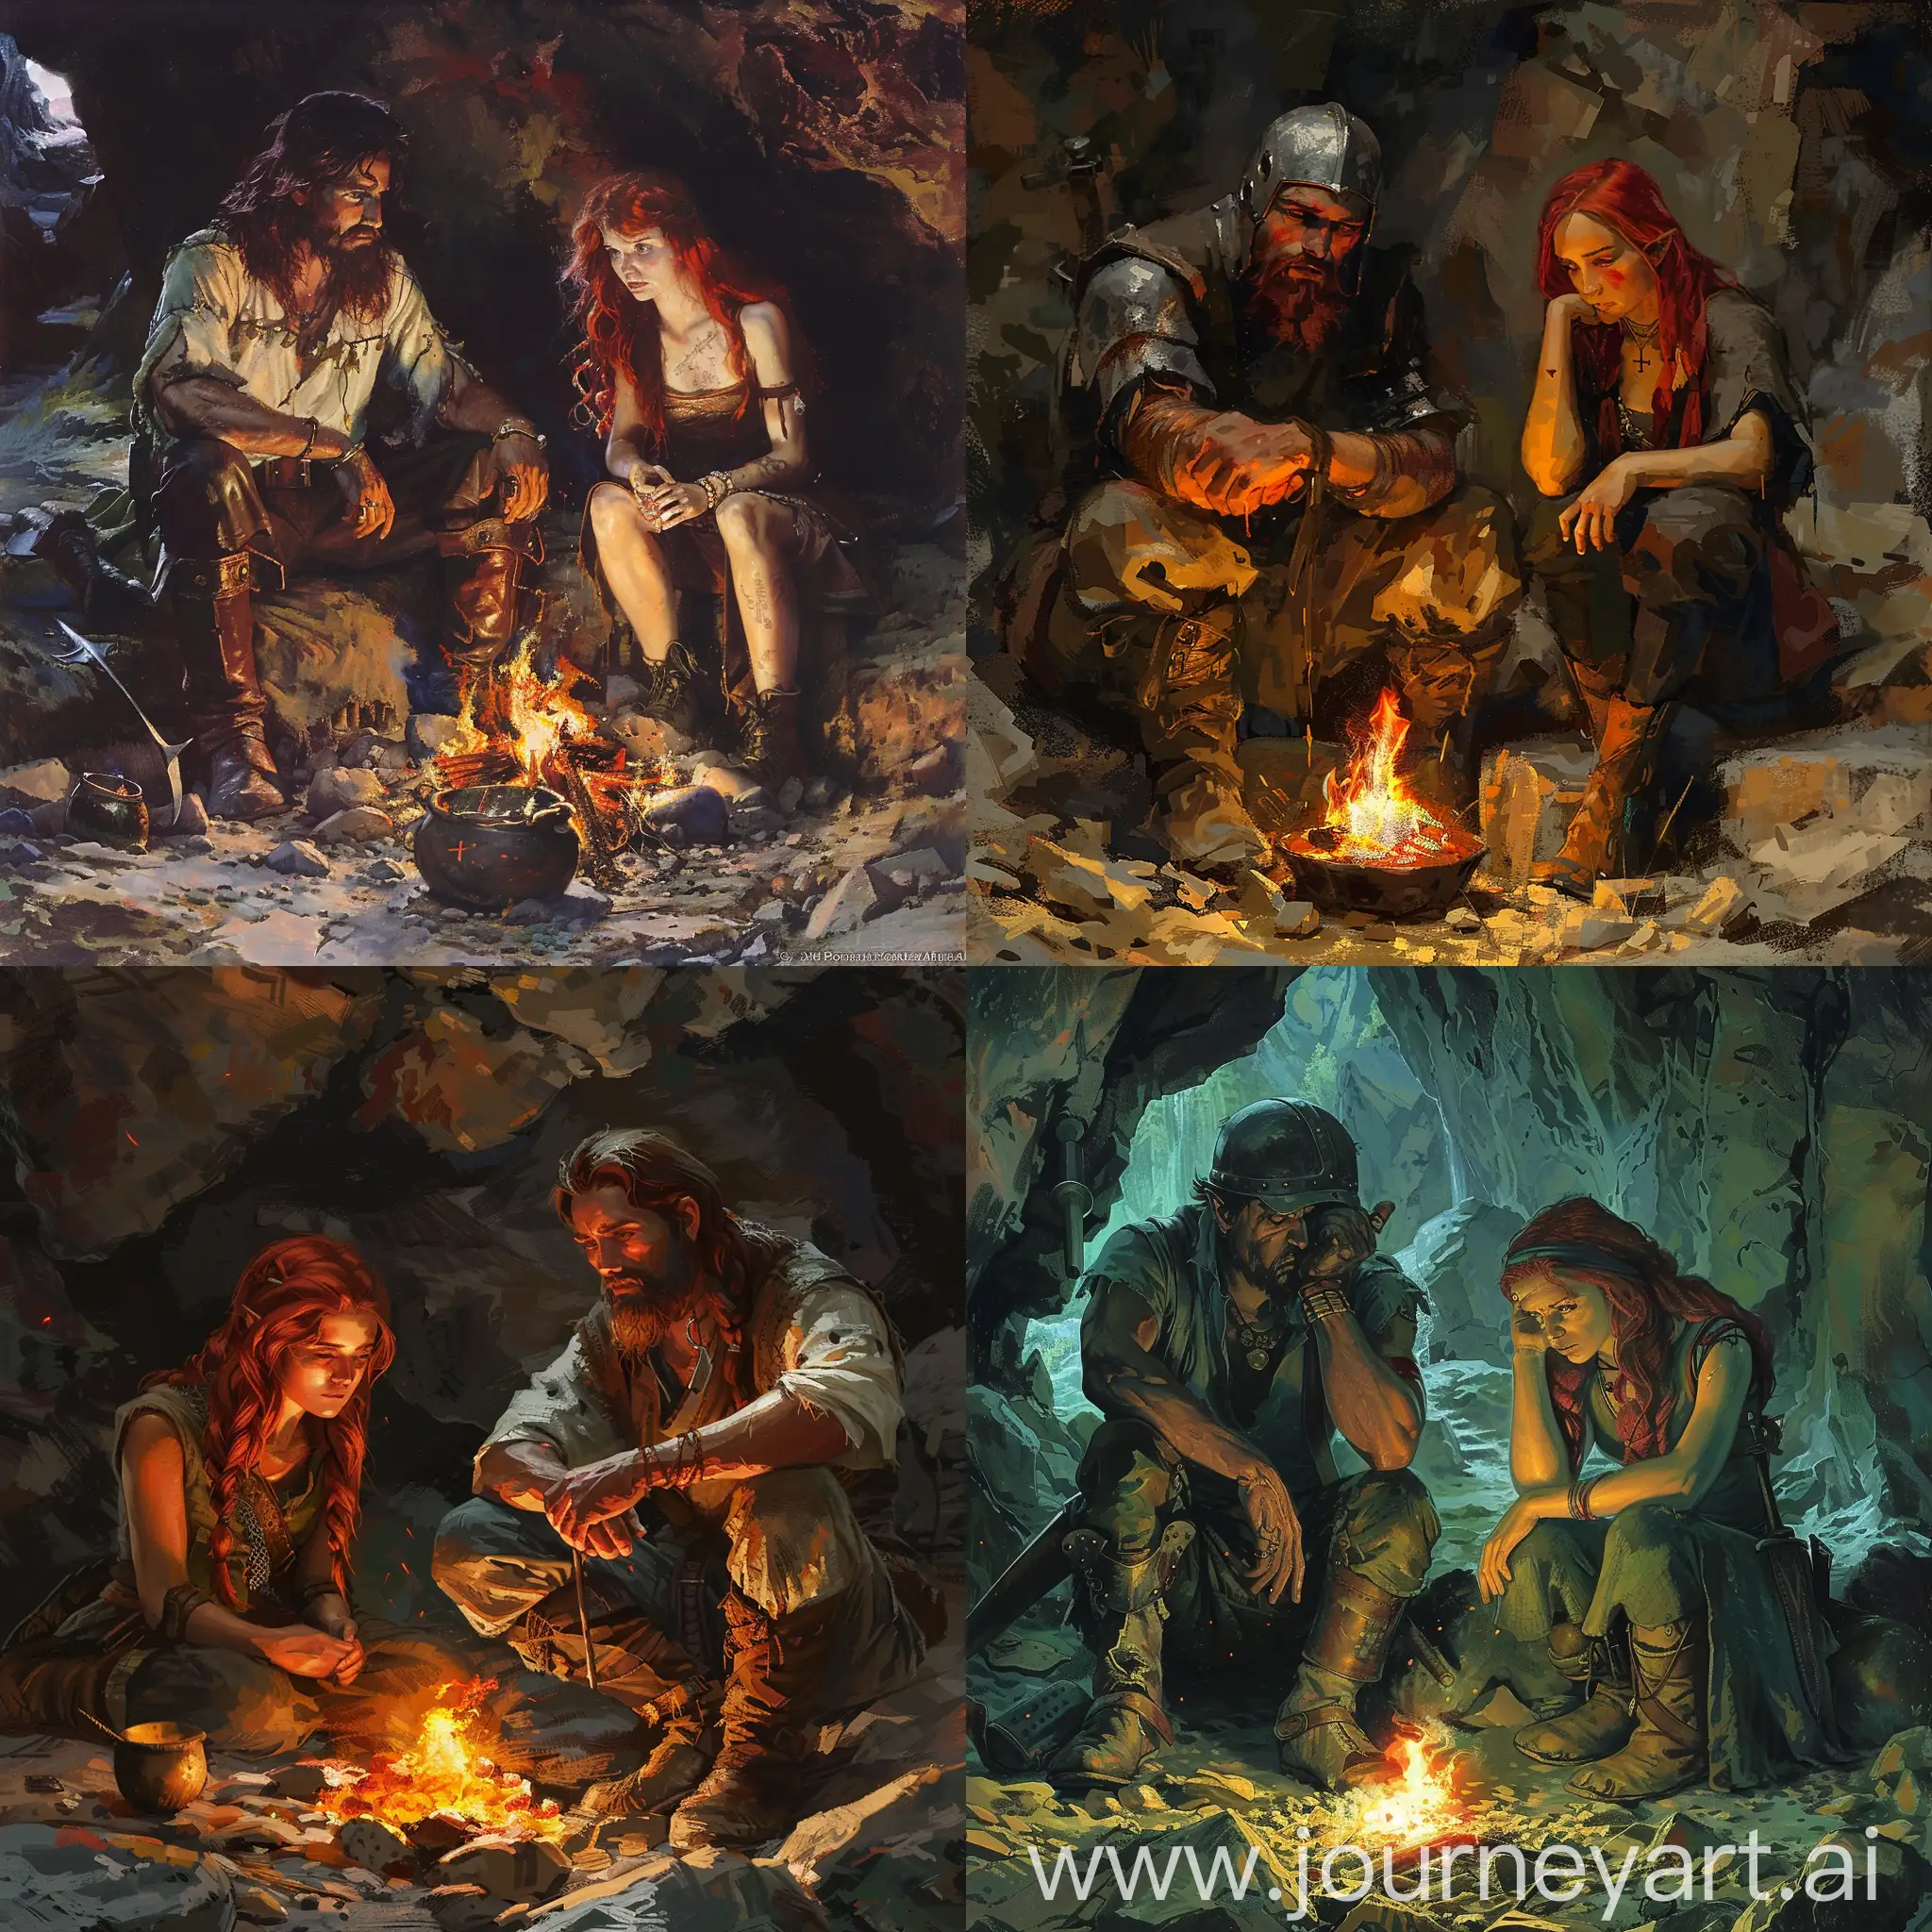 металлист и рыжая девушка седят у костра в пещере